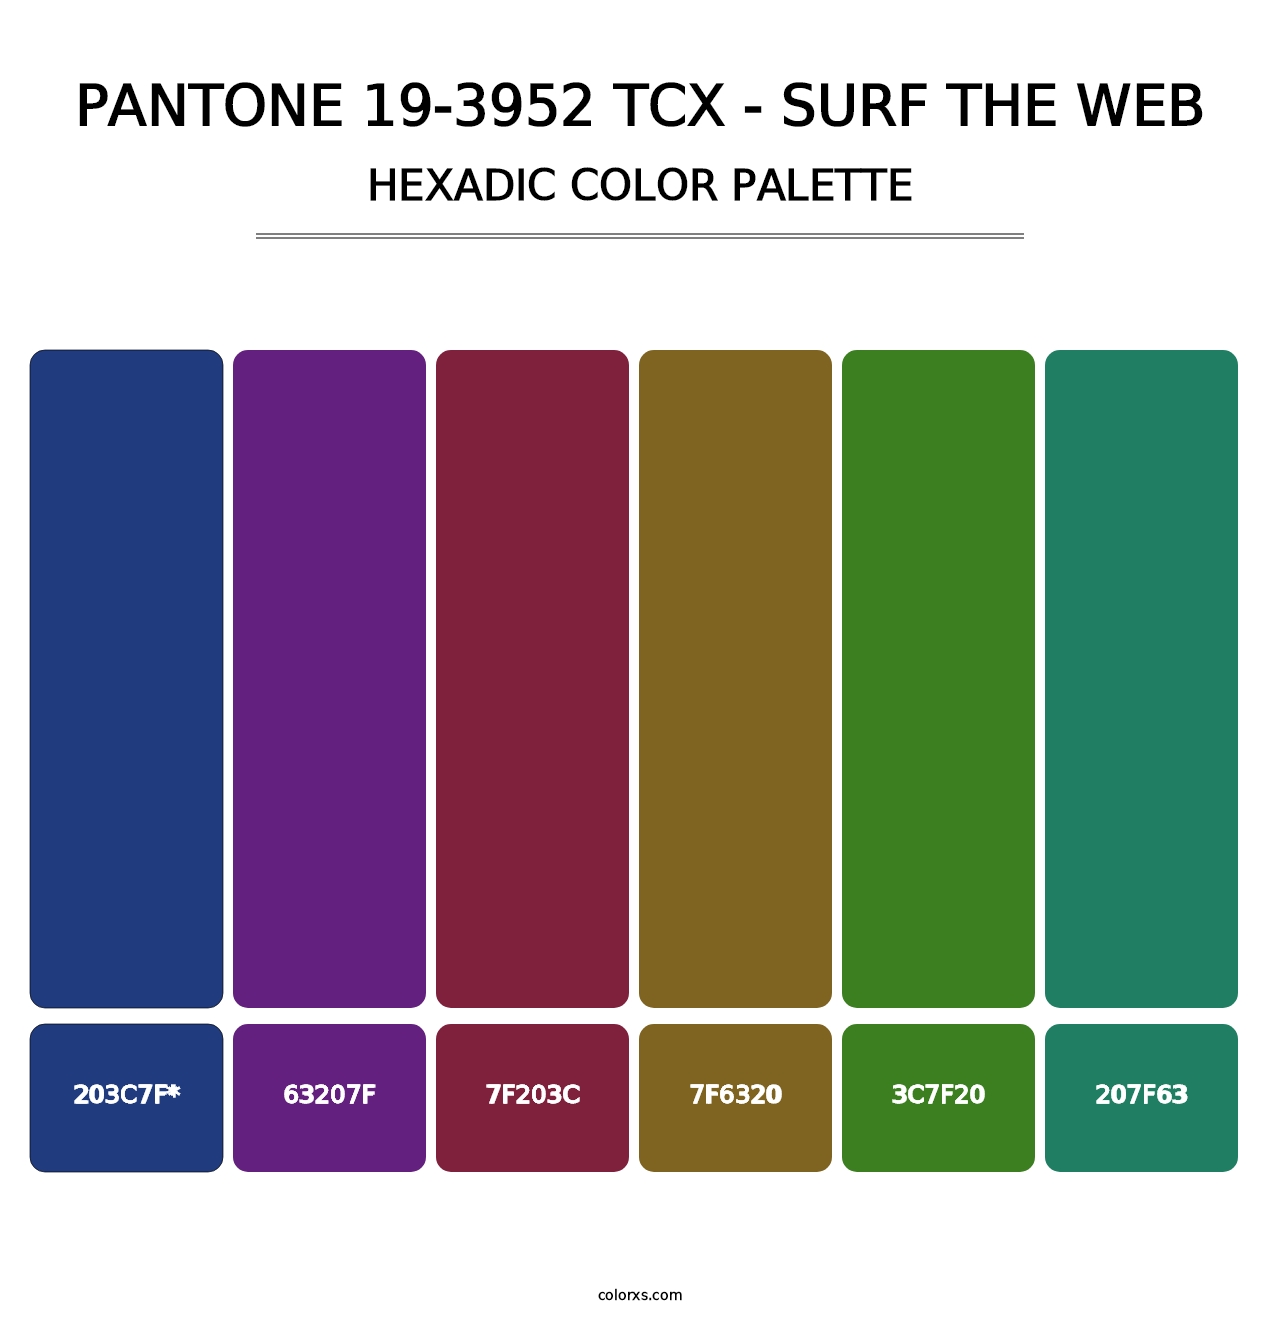 PANTONE 19-3952 TCX - Surf the Web - Hexadic Color Palette